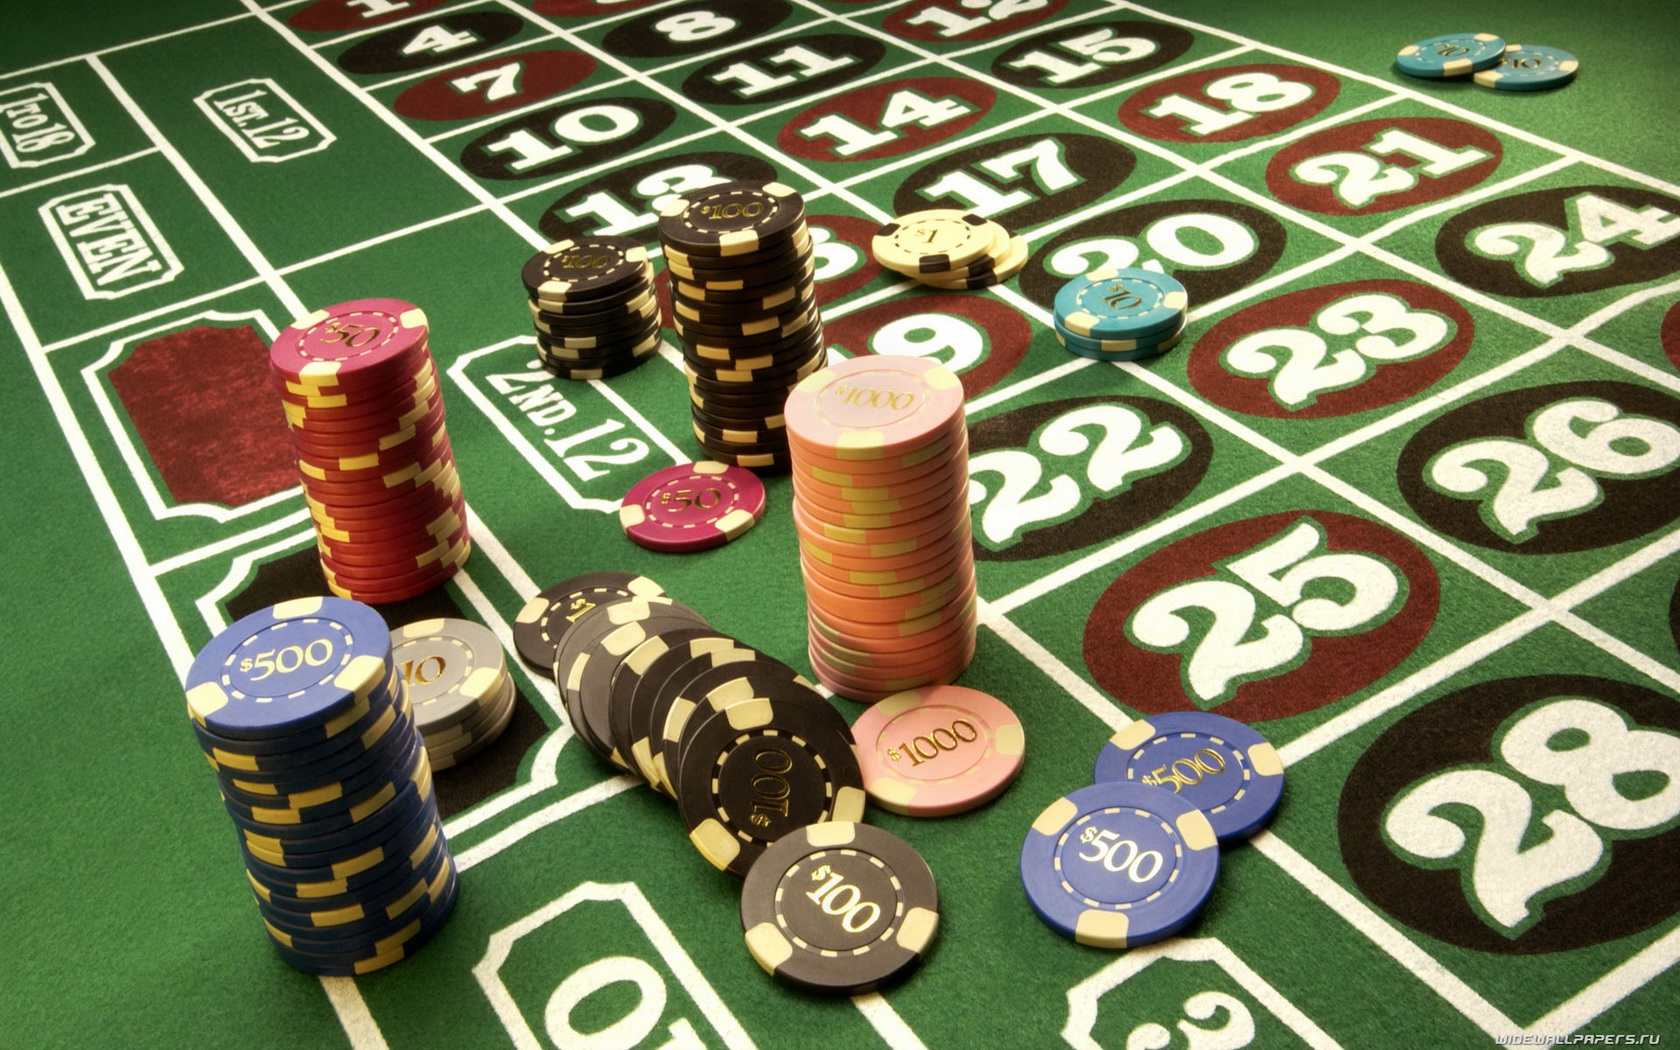 Рада легализовала азартные игры. К чему это может привести?